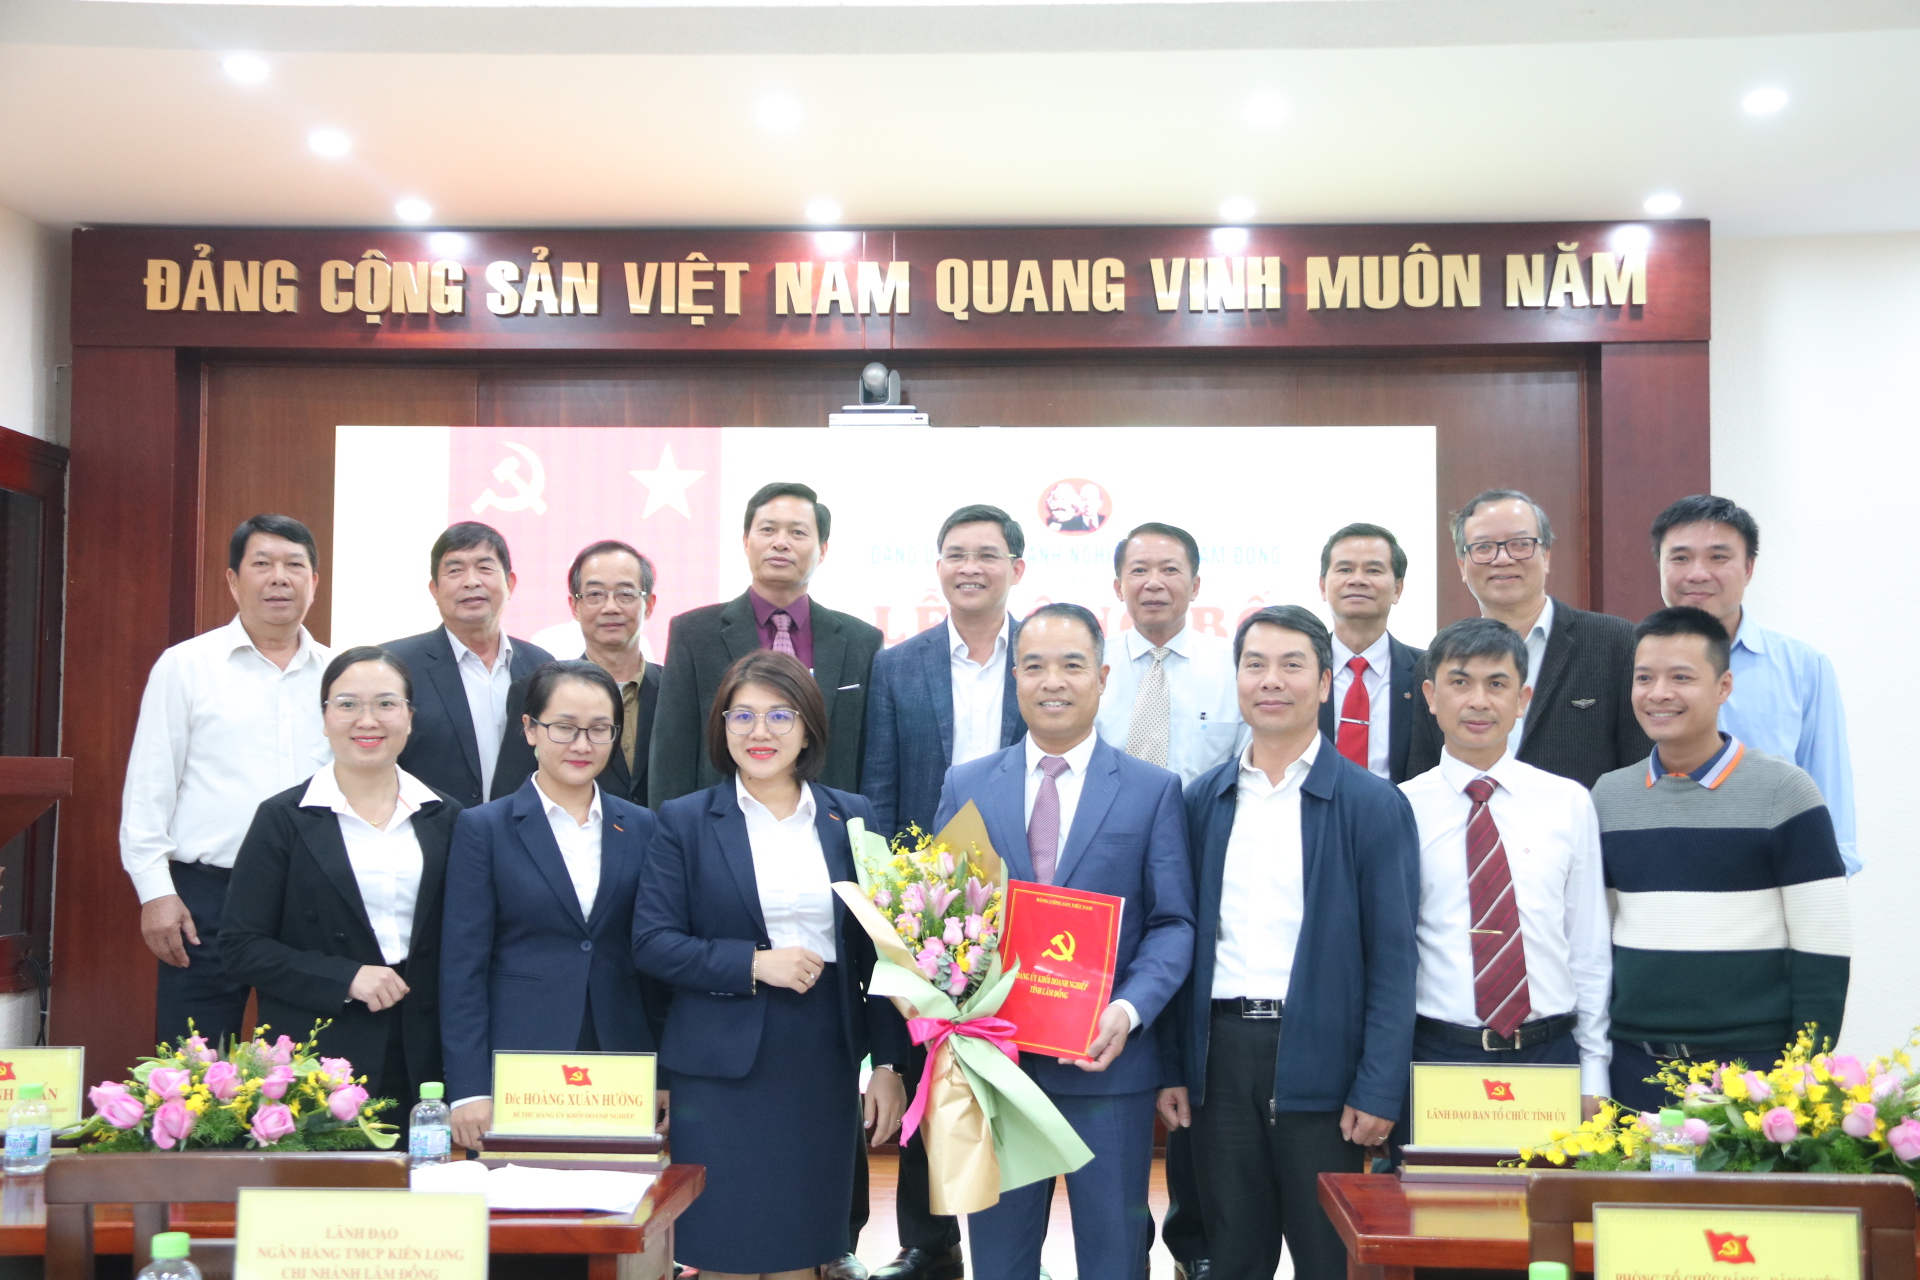 Ra mắt Chi bộ cơ sở Ngân hàng TMCP Kiên Long chi nhánh Lâm Đồng